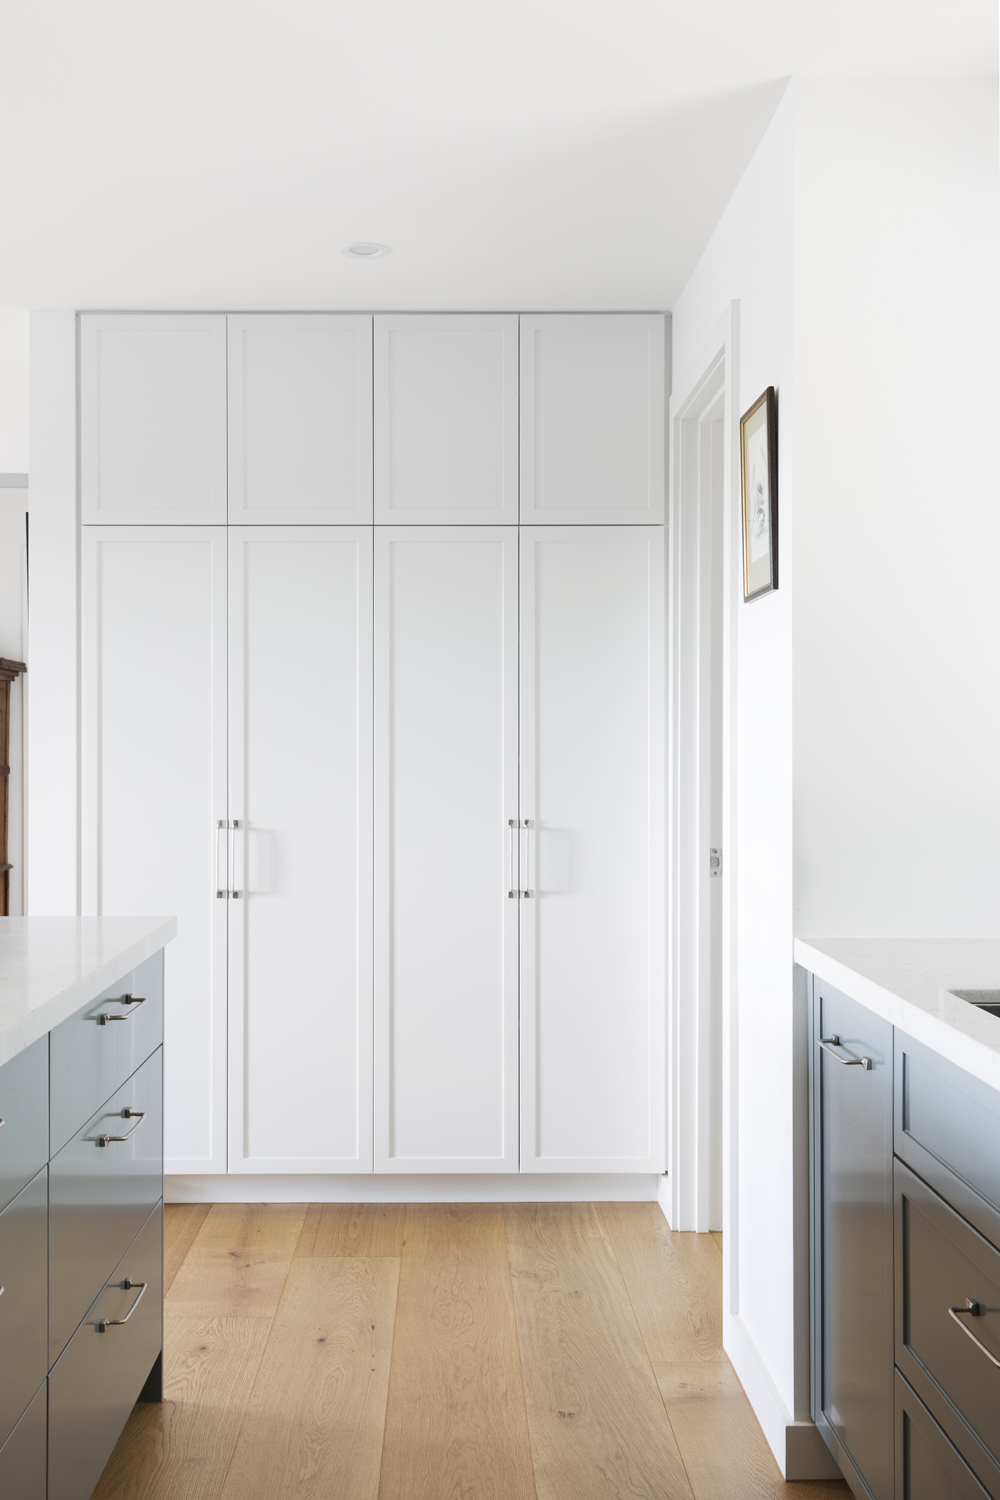 Red Hill kitchen design by interior designer Meredith Lee